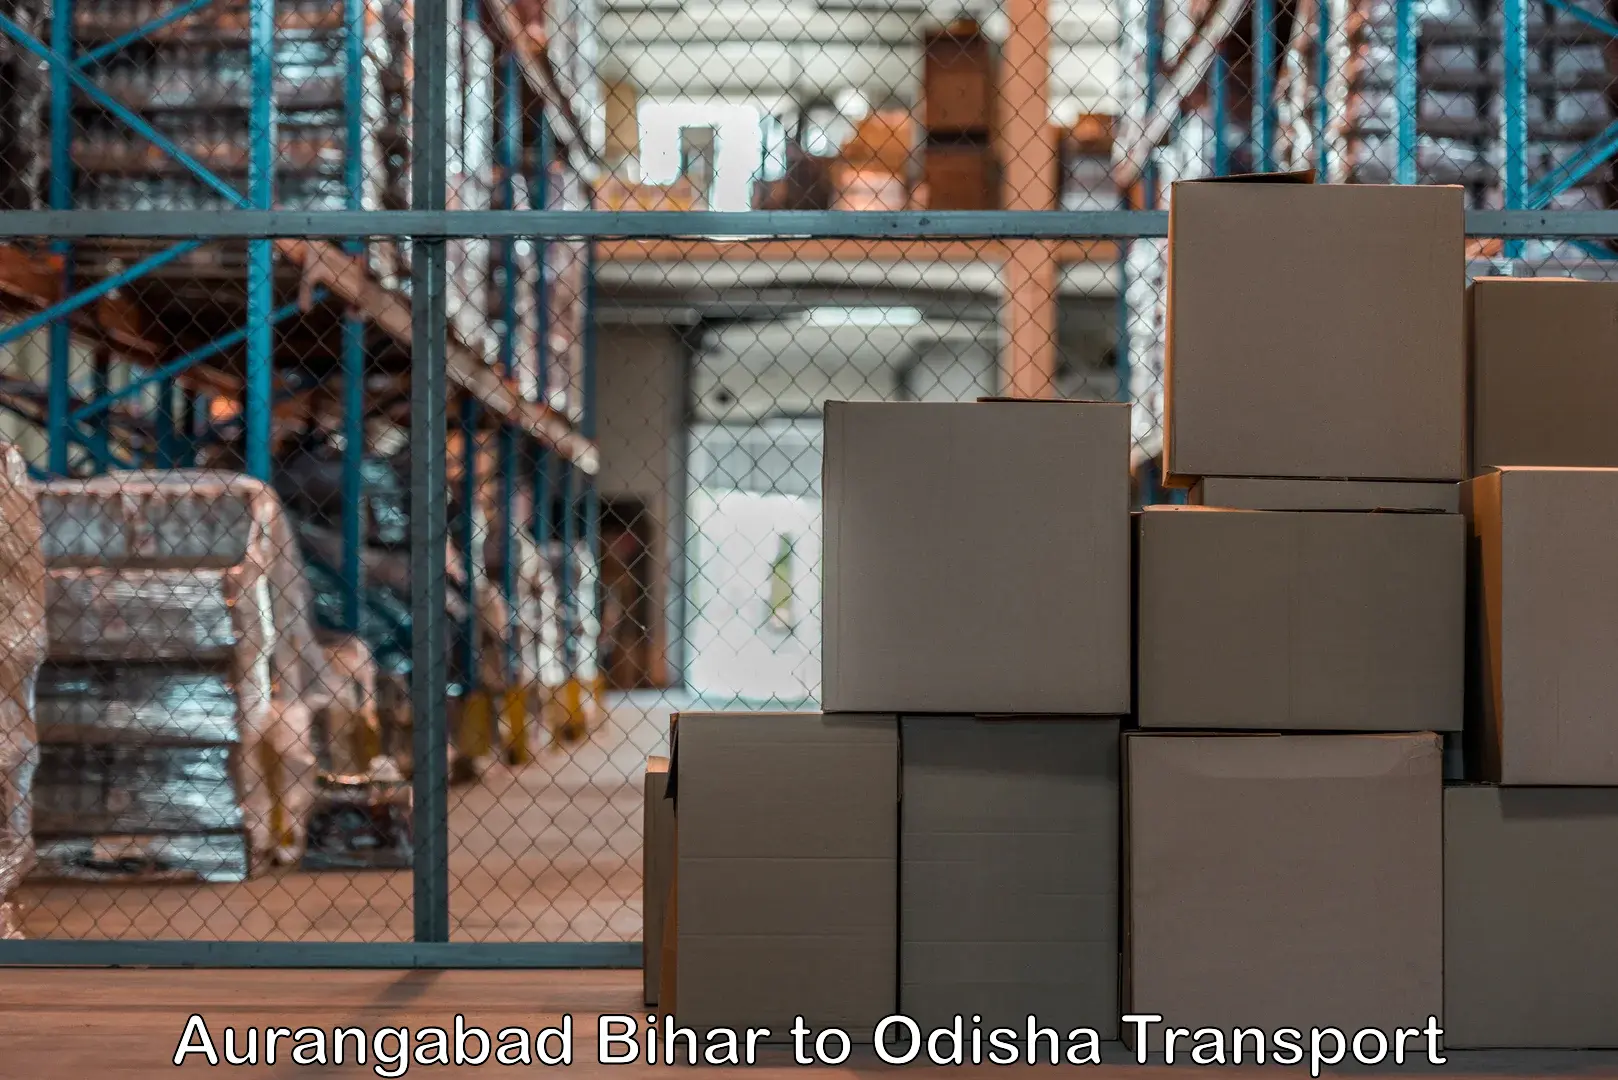 Container transport service Aurangabad Bihar to Chandinchowk